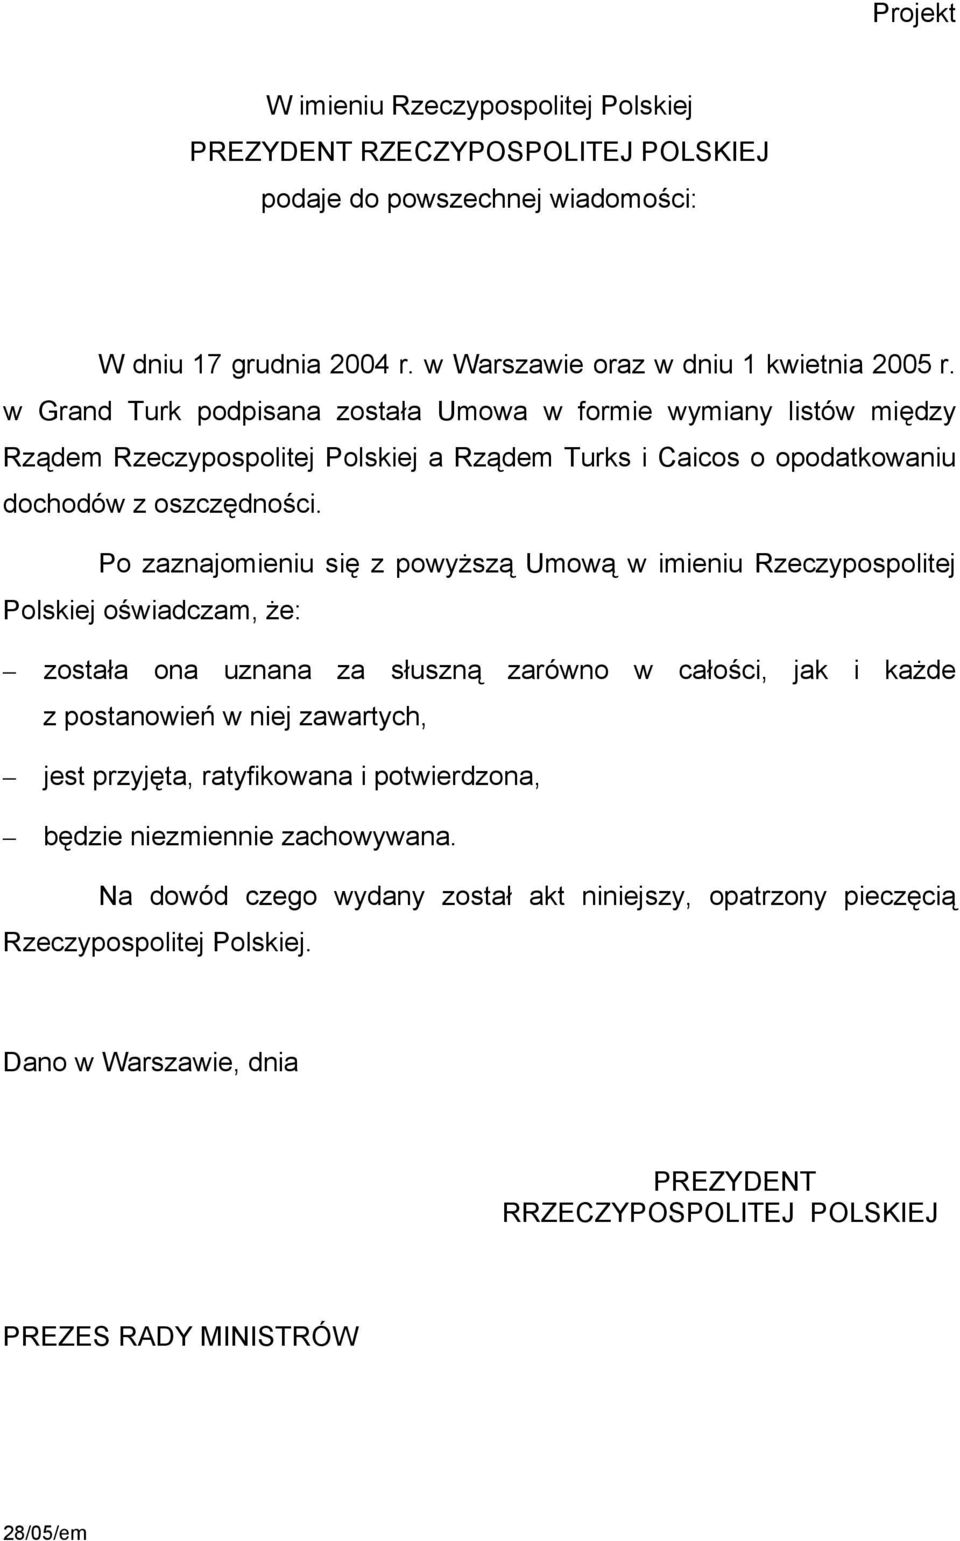 Po zaznajomieniu się z powyższą Umową w imieniu Rzeczypospolitej Polskiej oświadczam, że: została ona uznana za słuszną zarówno w całości, jak i każde z postanowień w niej zawartych, jest przyjęta,